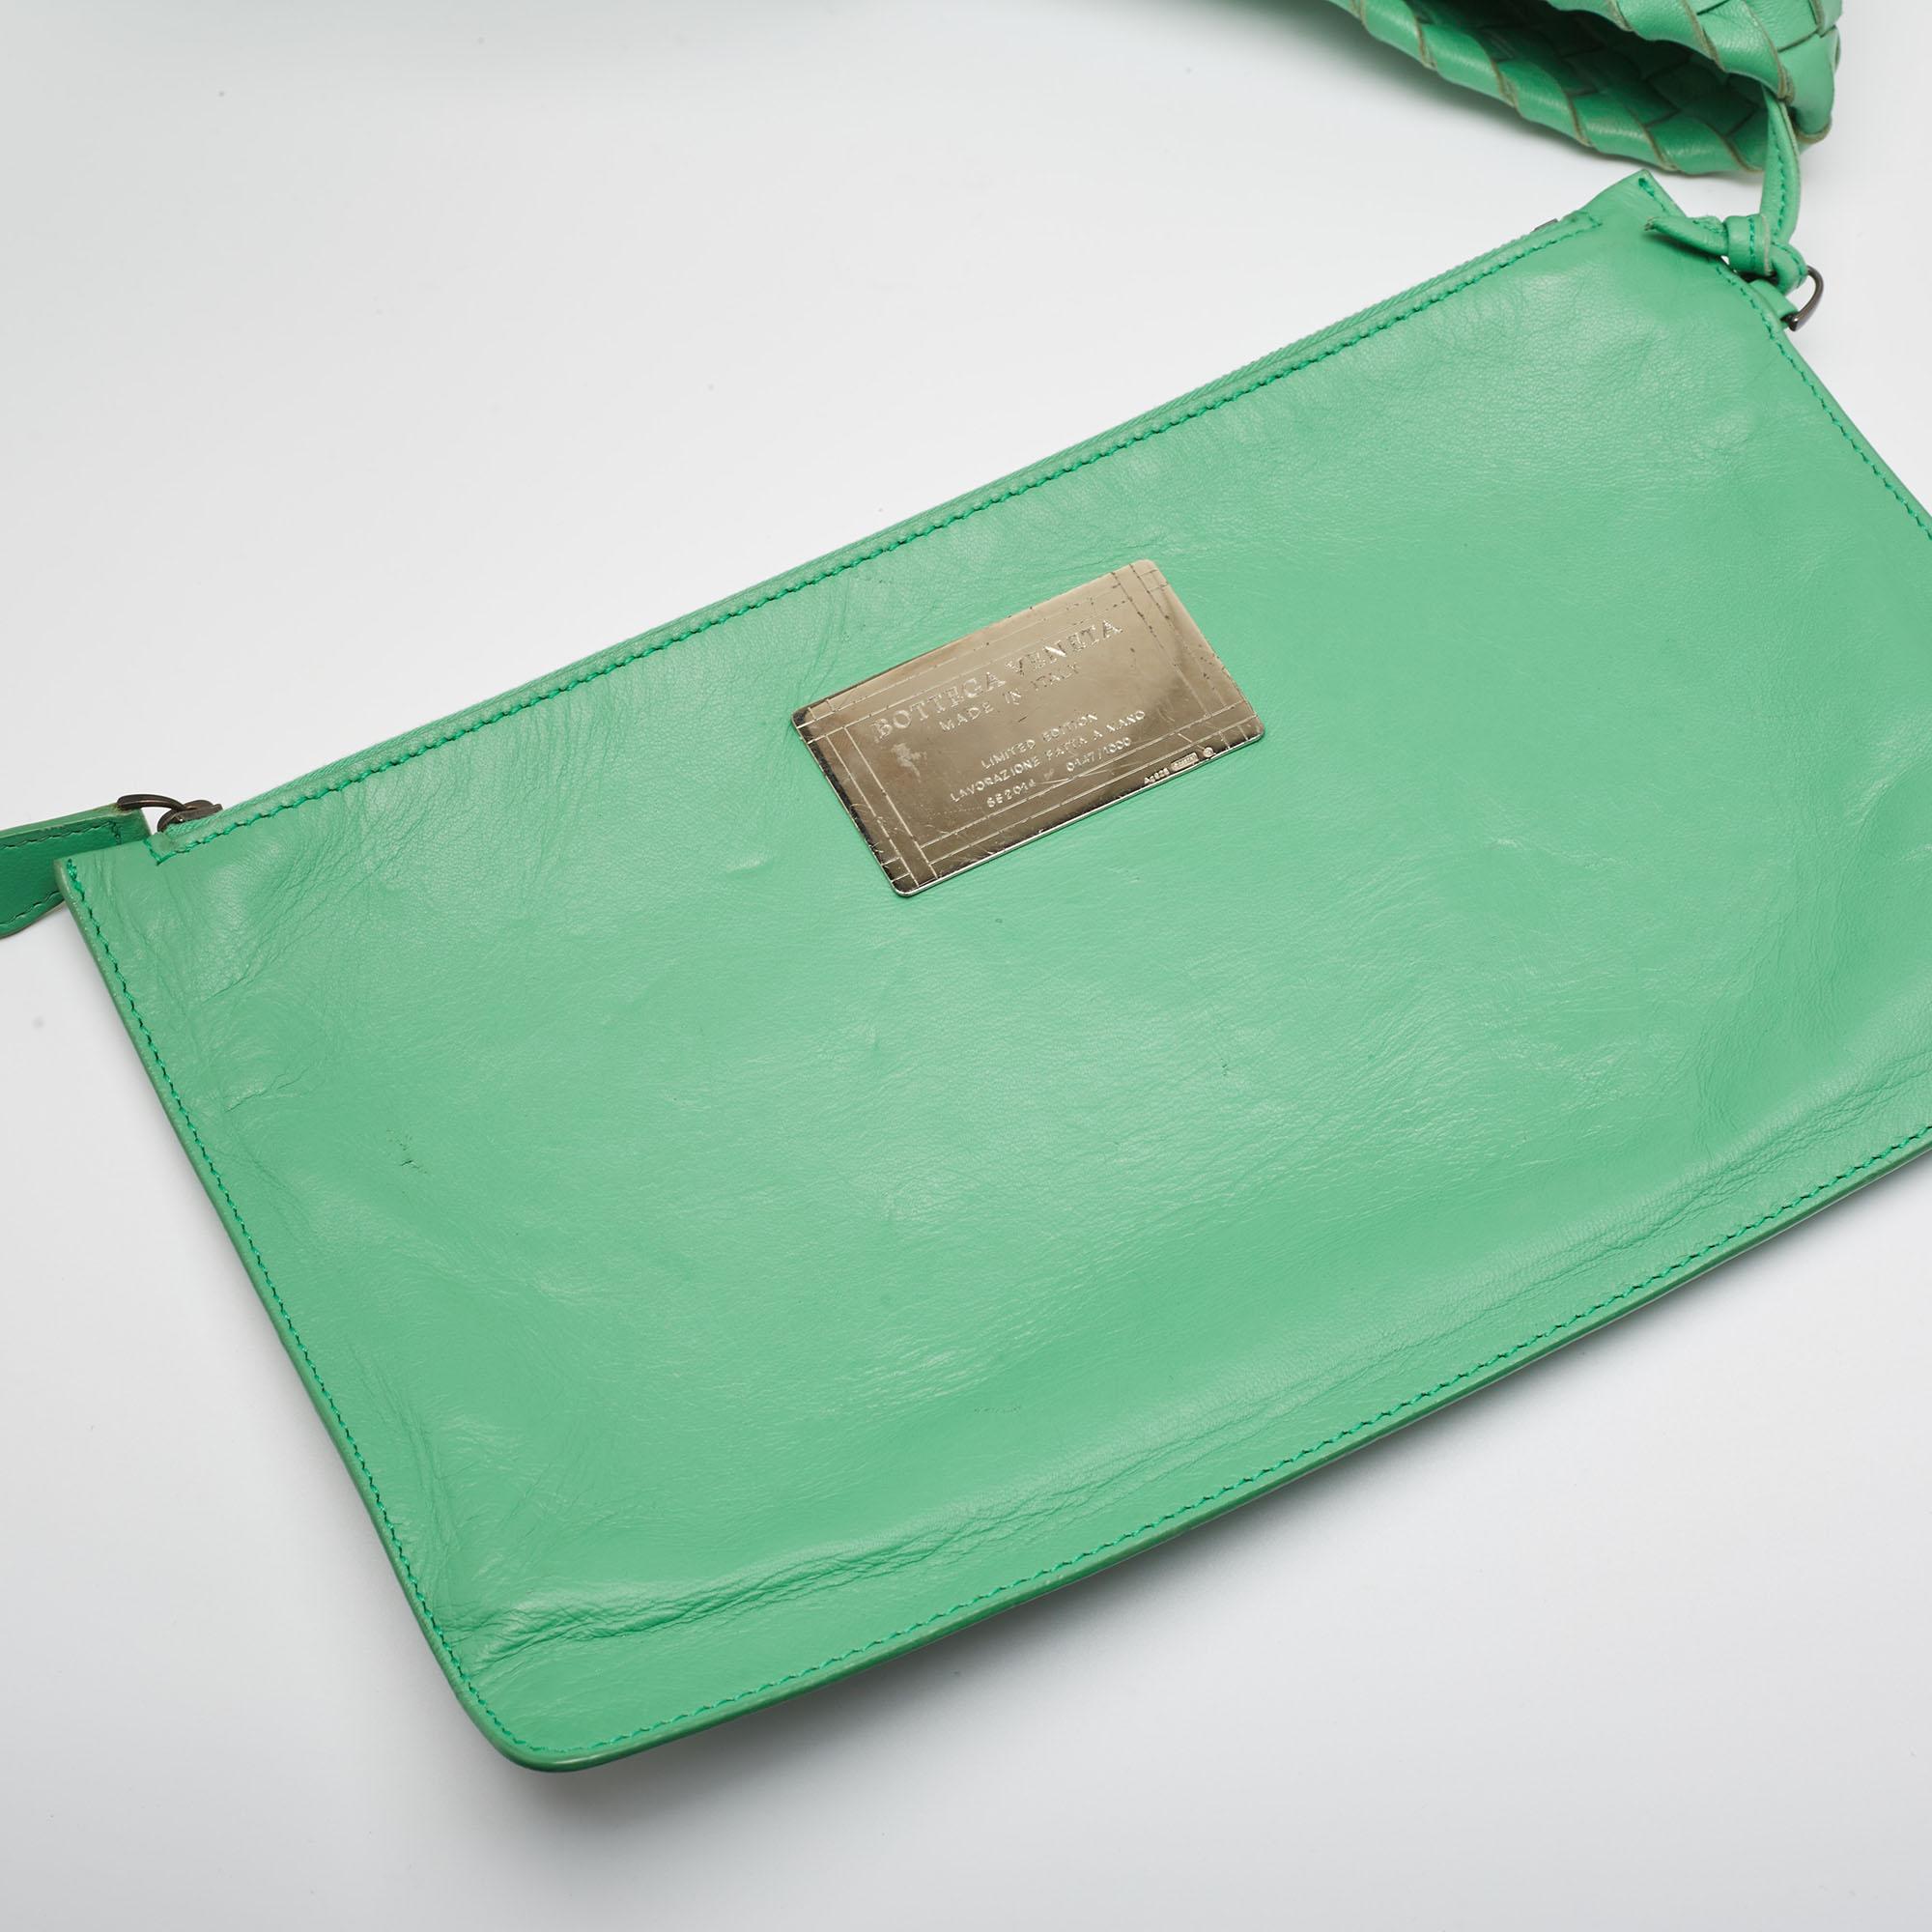 Bottega Veneta Green Intrecciato Leather  Limited Edition 0147/1000 Cabat Tote For Sale 13